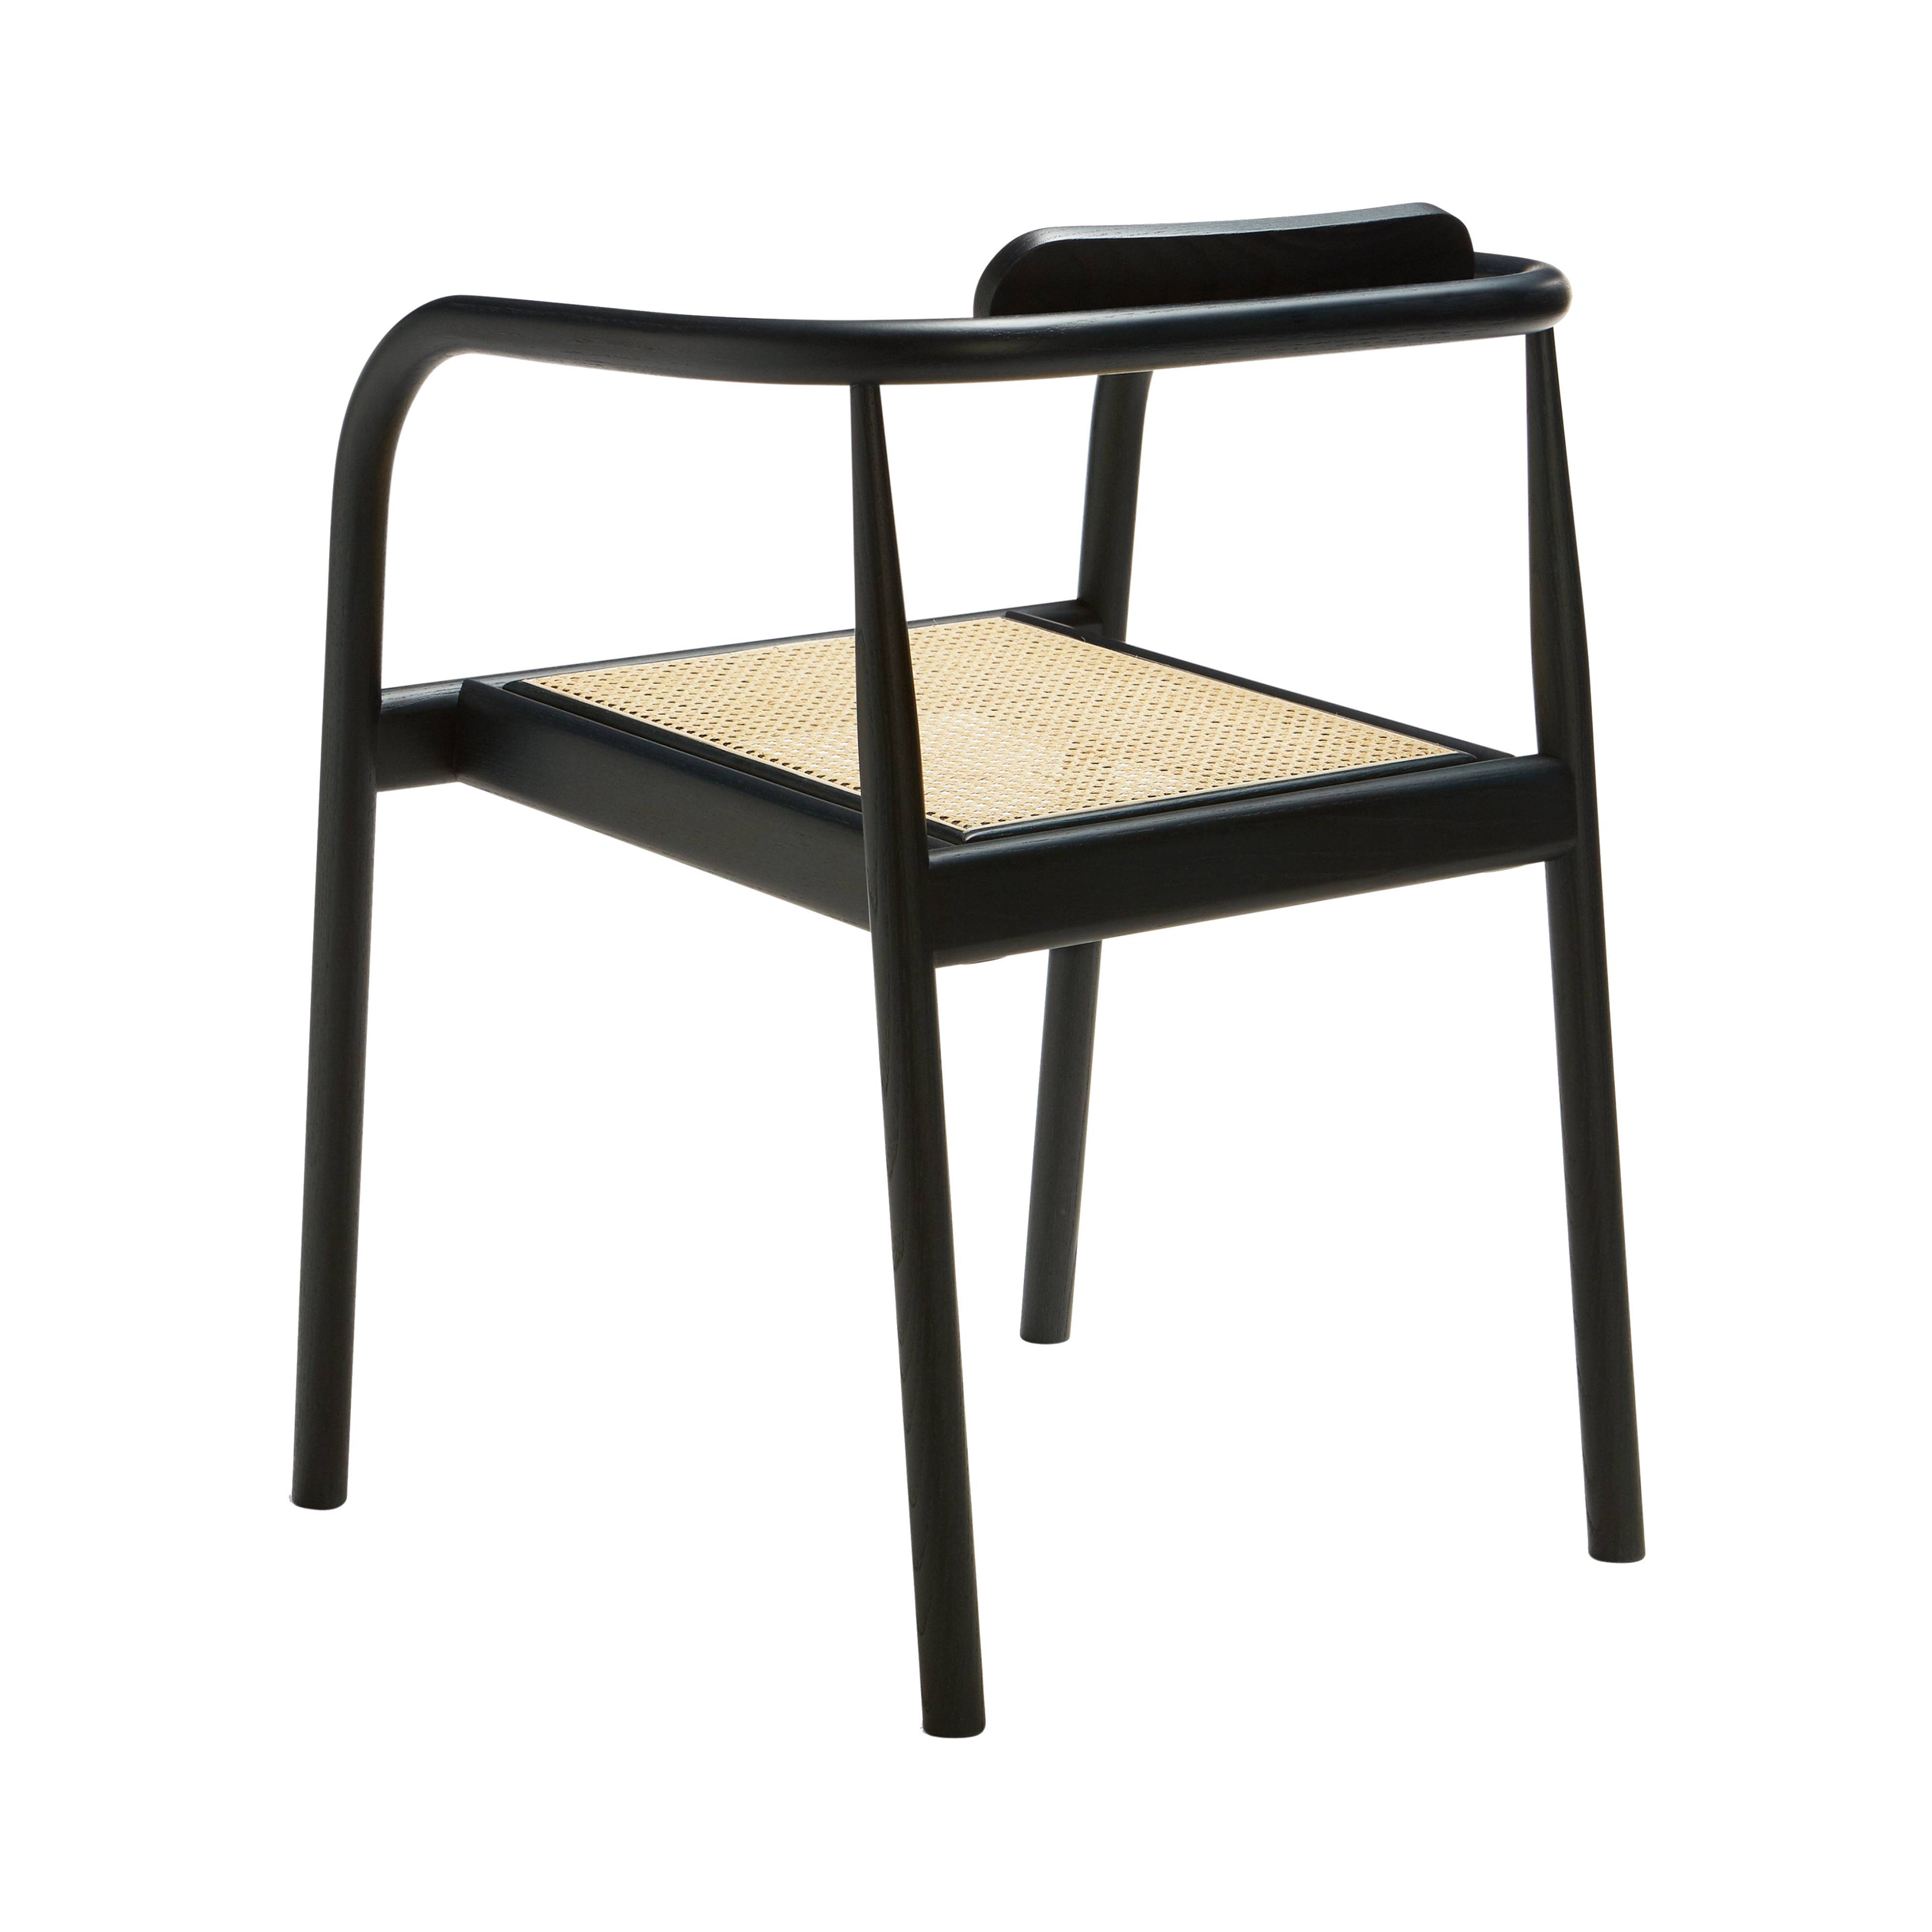 Ahm Chair: Black